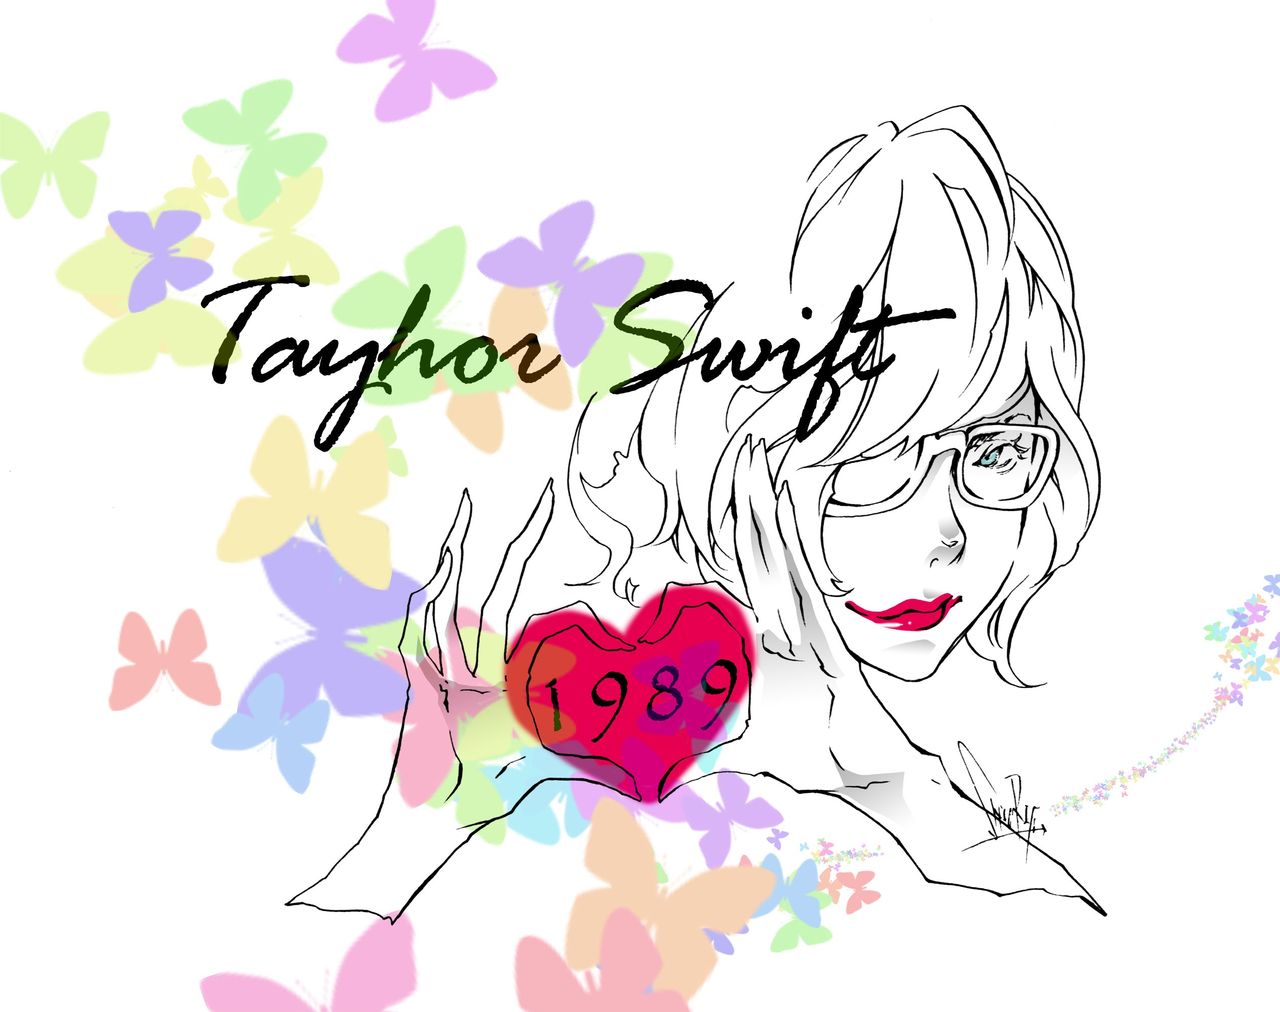 Taylor Swift ふるかわしおりな日々 オフィシャルブログ